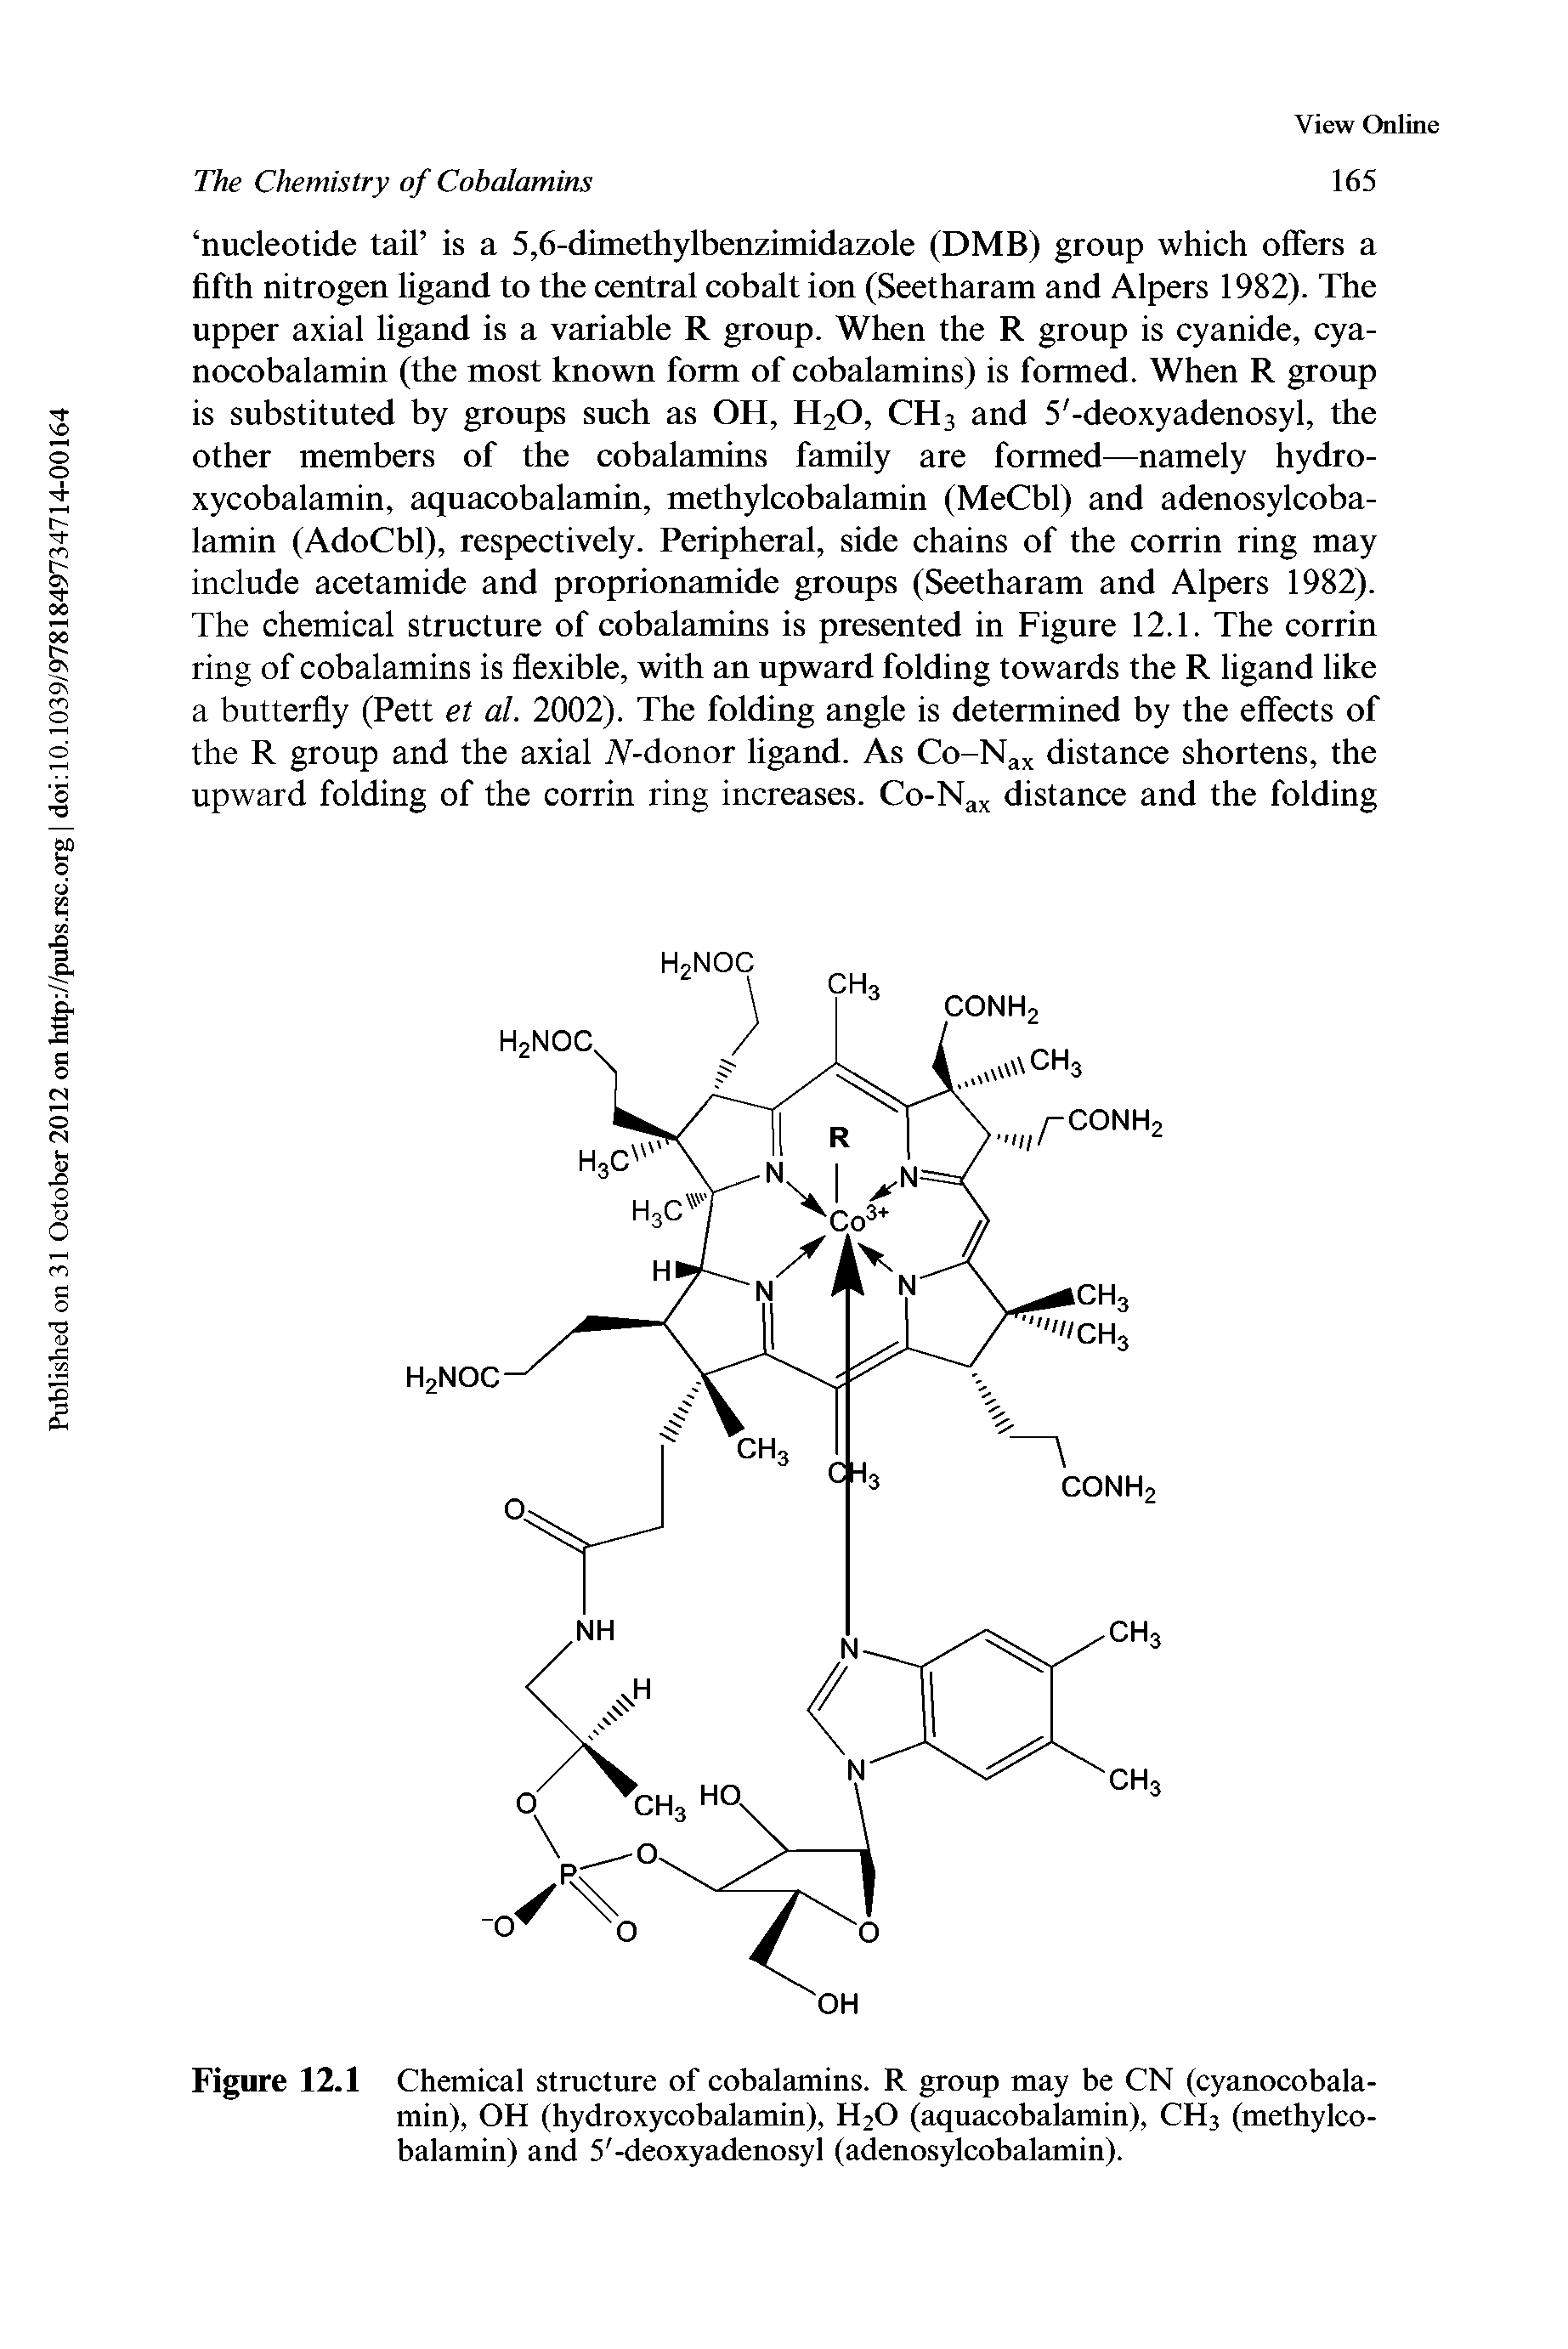 Figure 12.1 Chemical structure of cobalamins. R group may be CN (cyanocobala-min), OH (hydroxycobalamin), H2O (aquacobalamin), CH3 (methylcobalamin) and 5 -deoxyadenosyl (adenosylcobalamin).